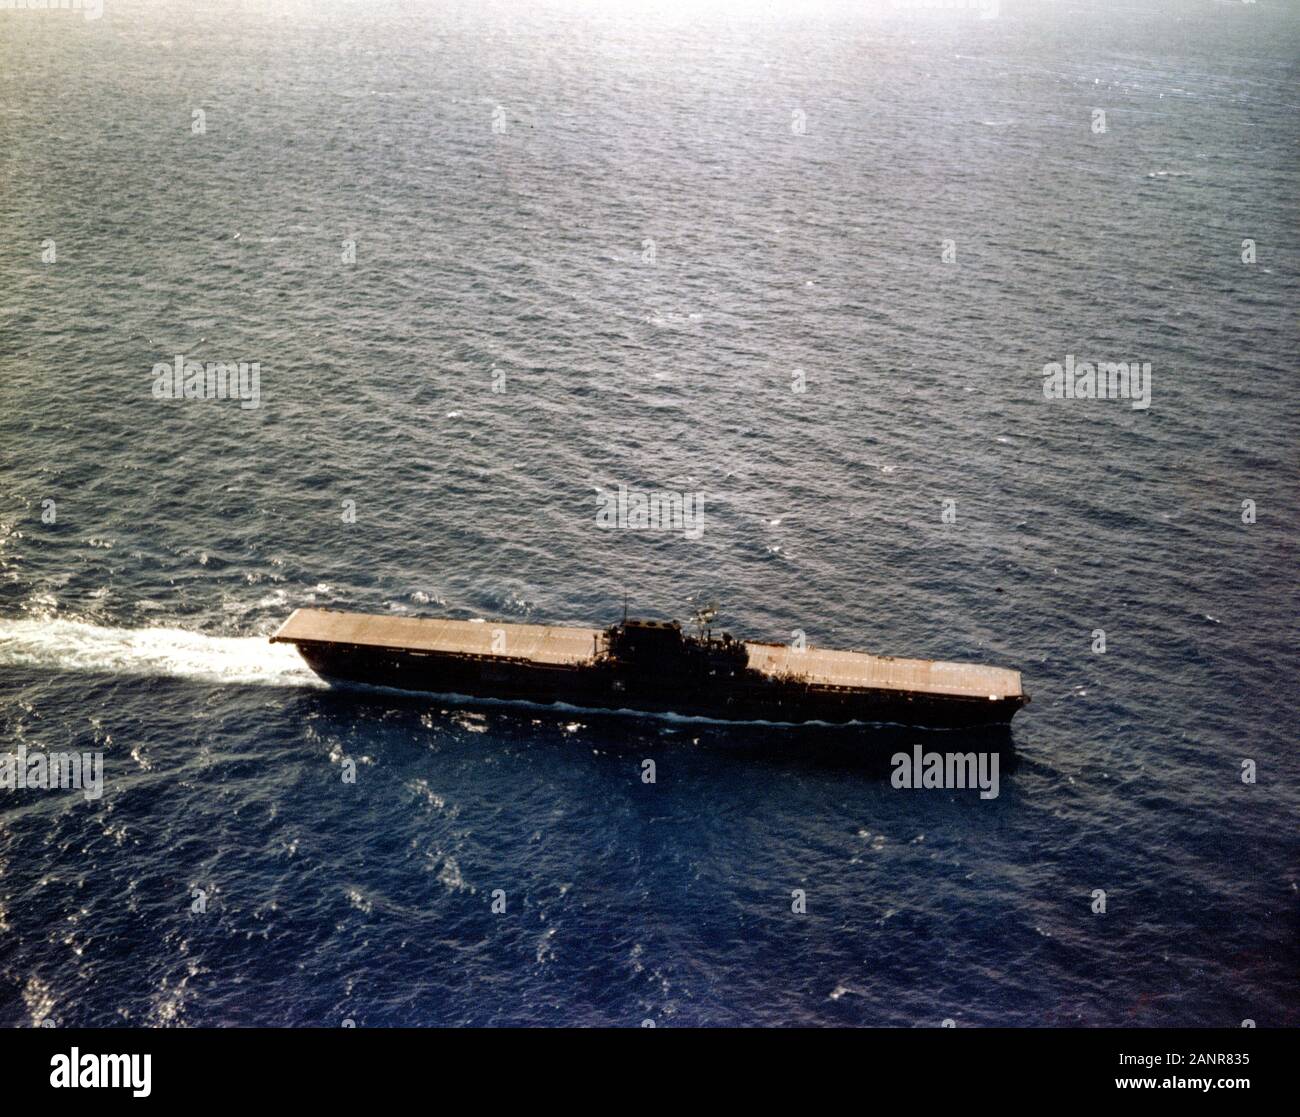 USS Enterprise (CV-6) que operan en el Pacífico, alrededor de finales de junio de 1941. Ella se está convirtiendo en el viento para recuperar los aviones. Nota de su cubierta de vuelo de madera natural manchas oscuras y medir un esquema de pintura de camuflaje. La cubierta de vuelo estaba manchado de azul en julio de 1941, durante experimentos de camuflaje que le dio un único patrón de banda de cubierta. Foto de stock